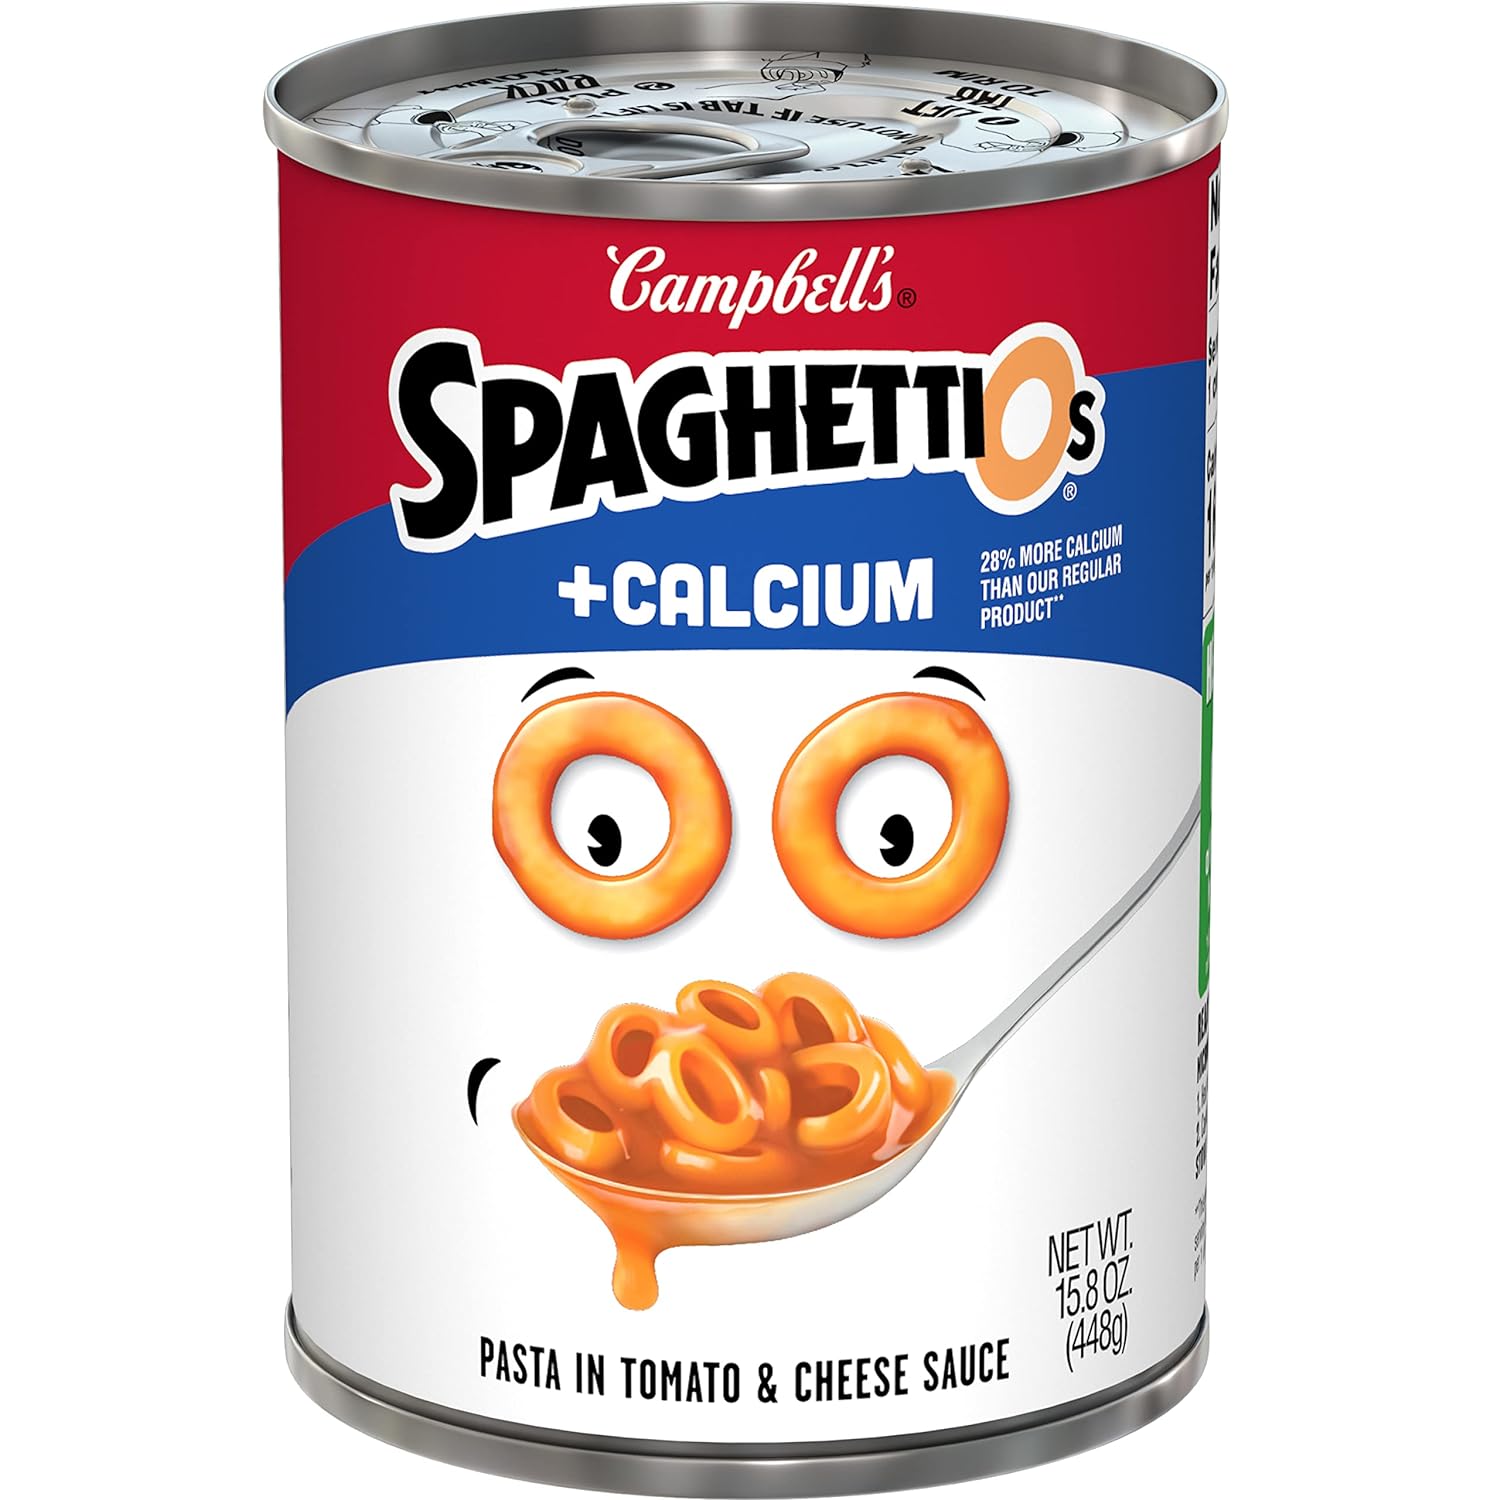 SpaghettiOs Original Canned Pasta Plus Calcium, 15.8 oz Can